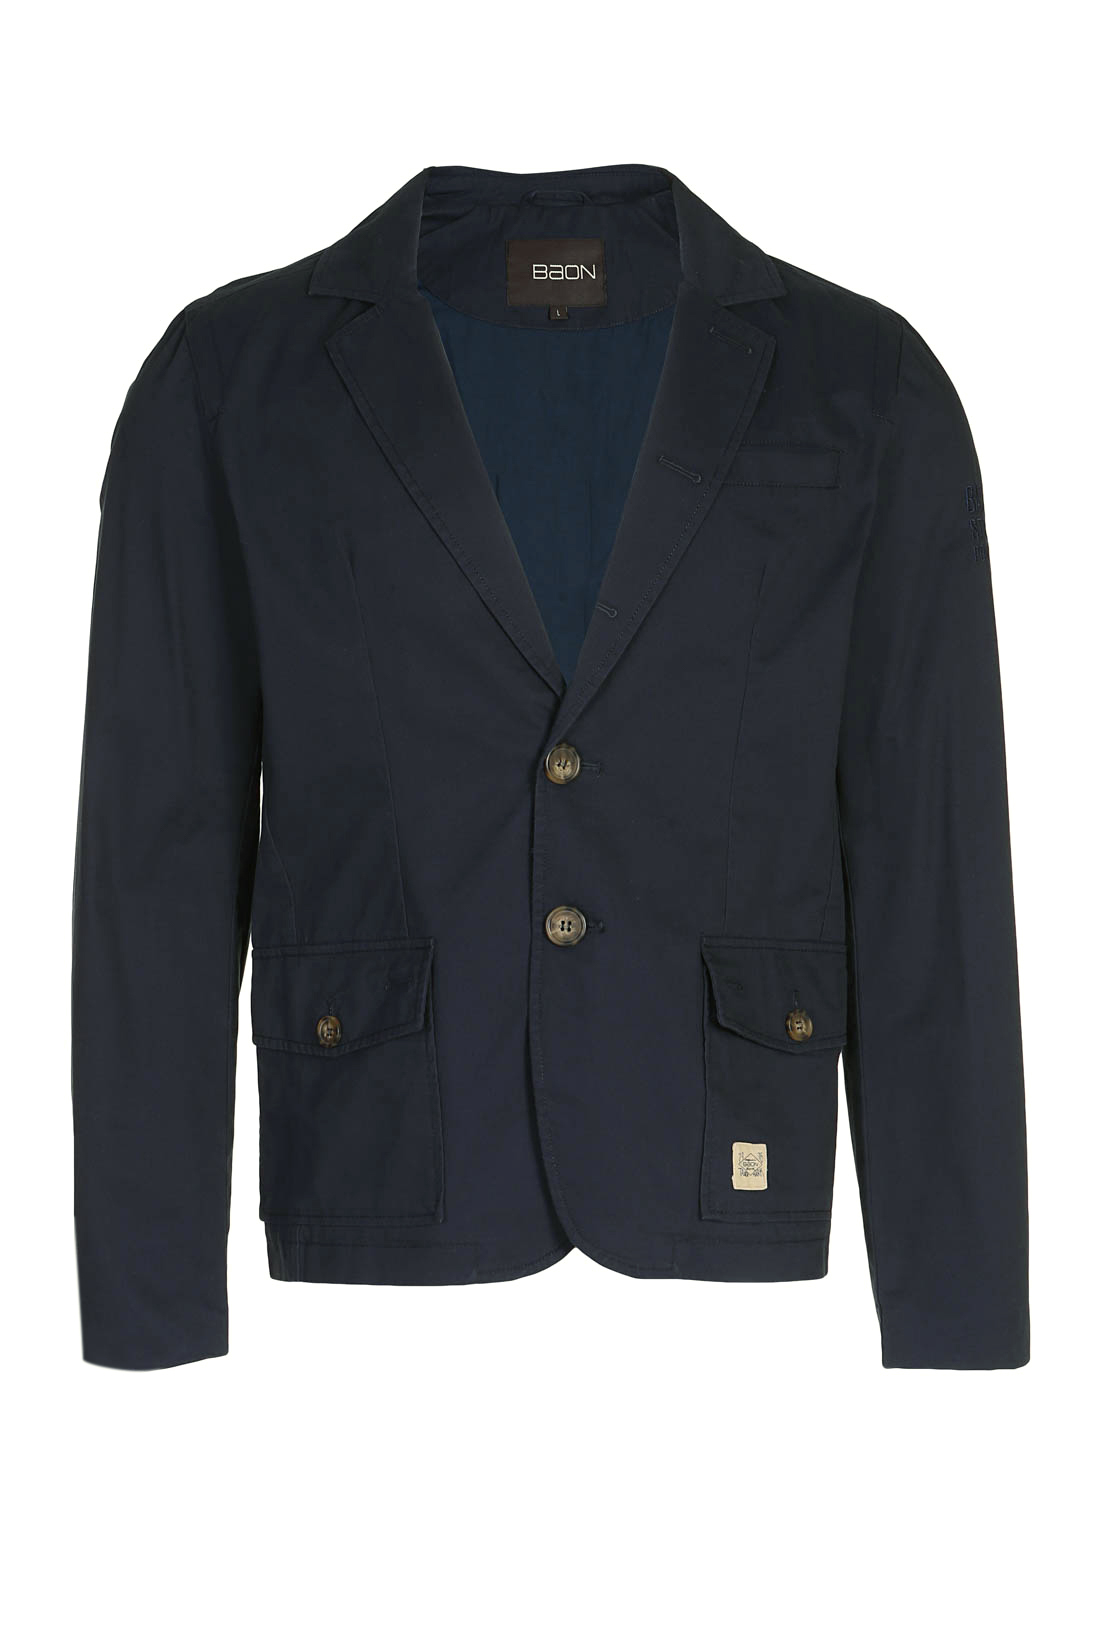 Повседневный пиджак (арт. baon B627004), размер M, цвет синий Повседневный пиджак (арт. baon B627004) - фото 3